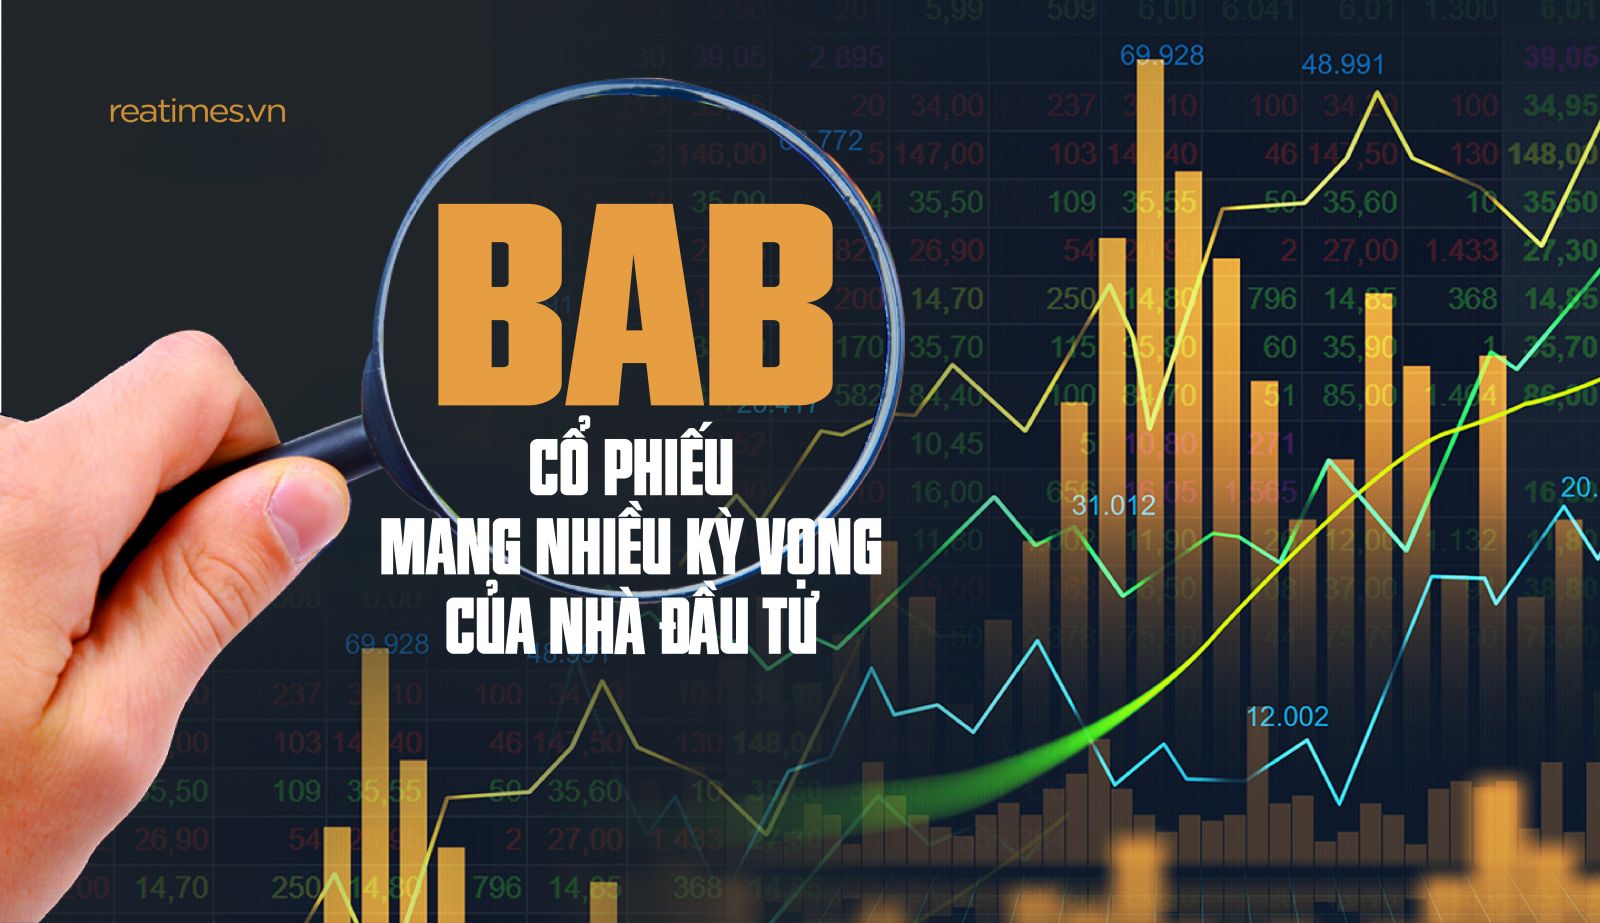 BAB – Cổ phiếu mang nhiều kỳ vọng của nhà đầu tư